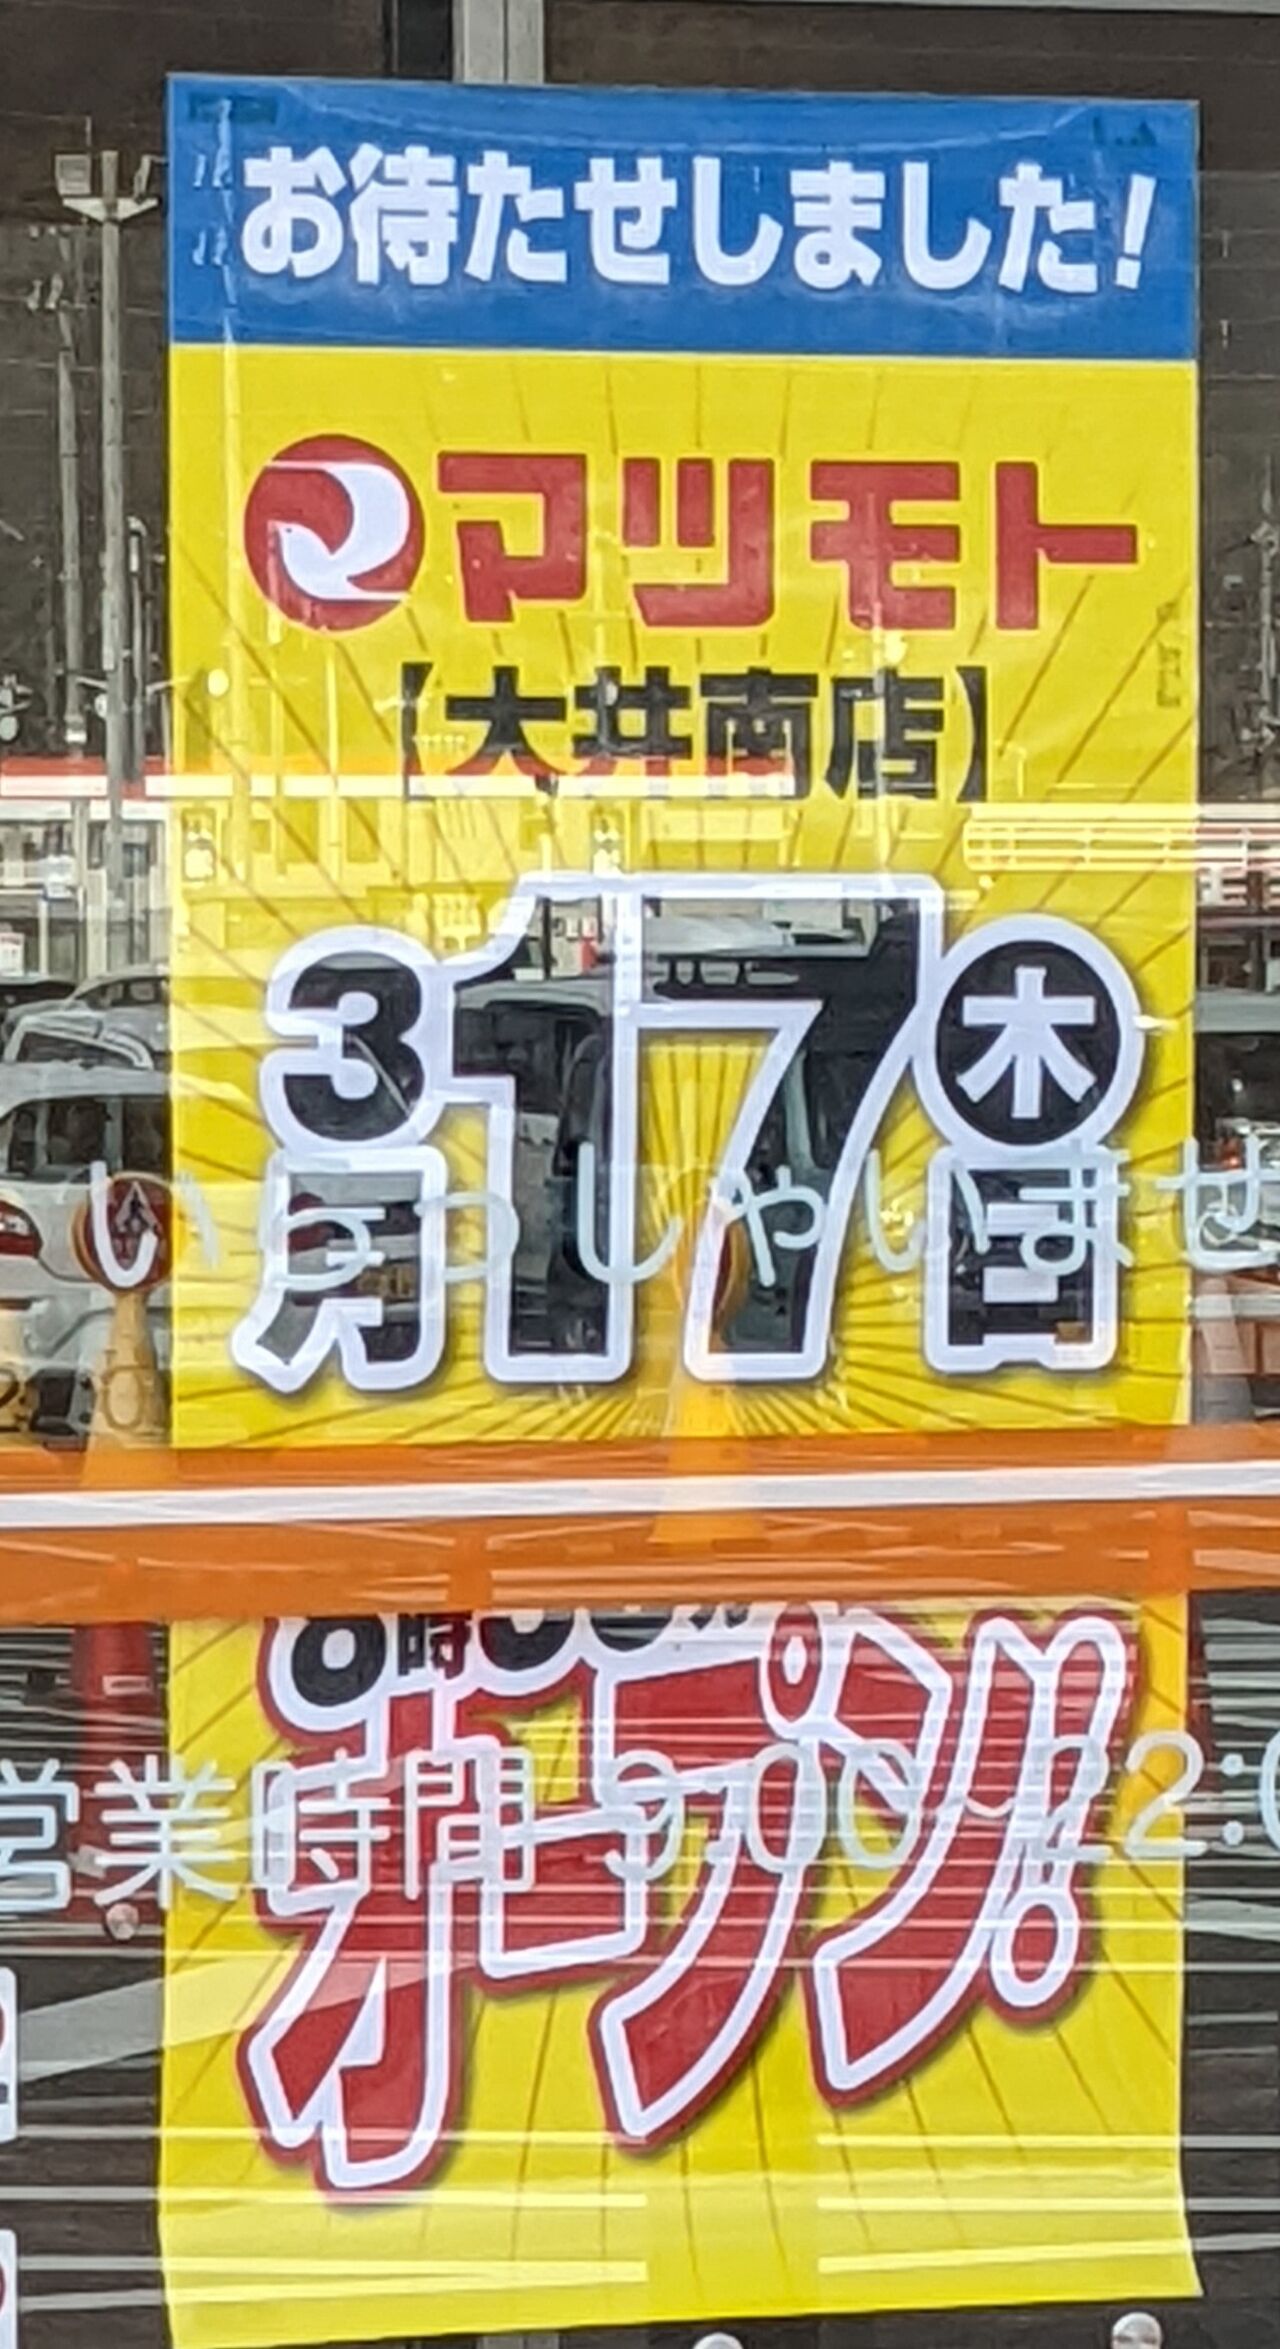 朗報 スーパーマツモト大井南店のオープン日がようやく決まる 京都目線 Fwf彡